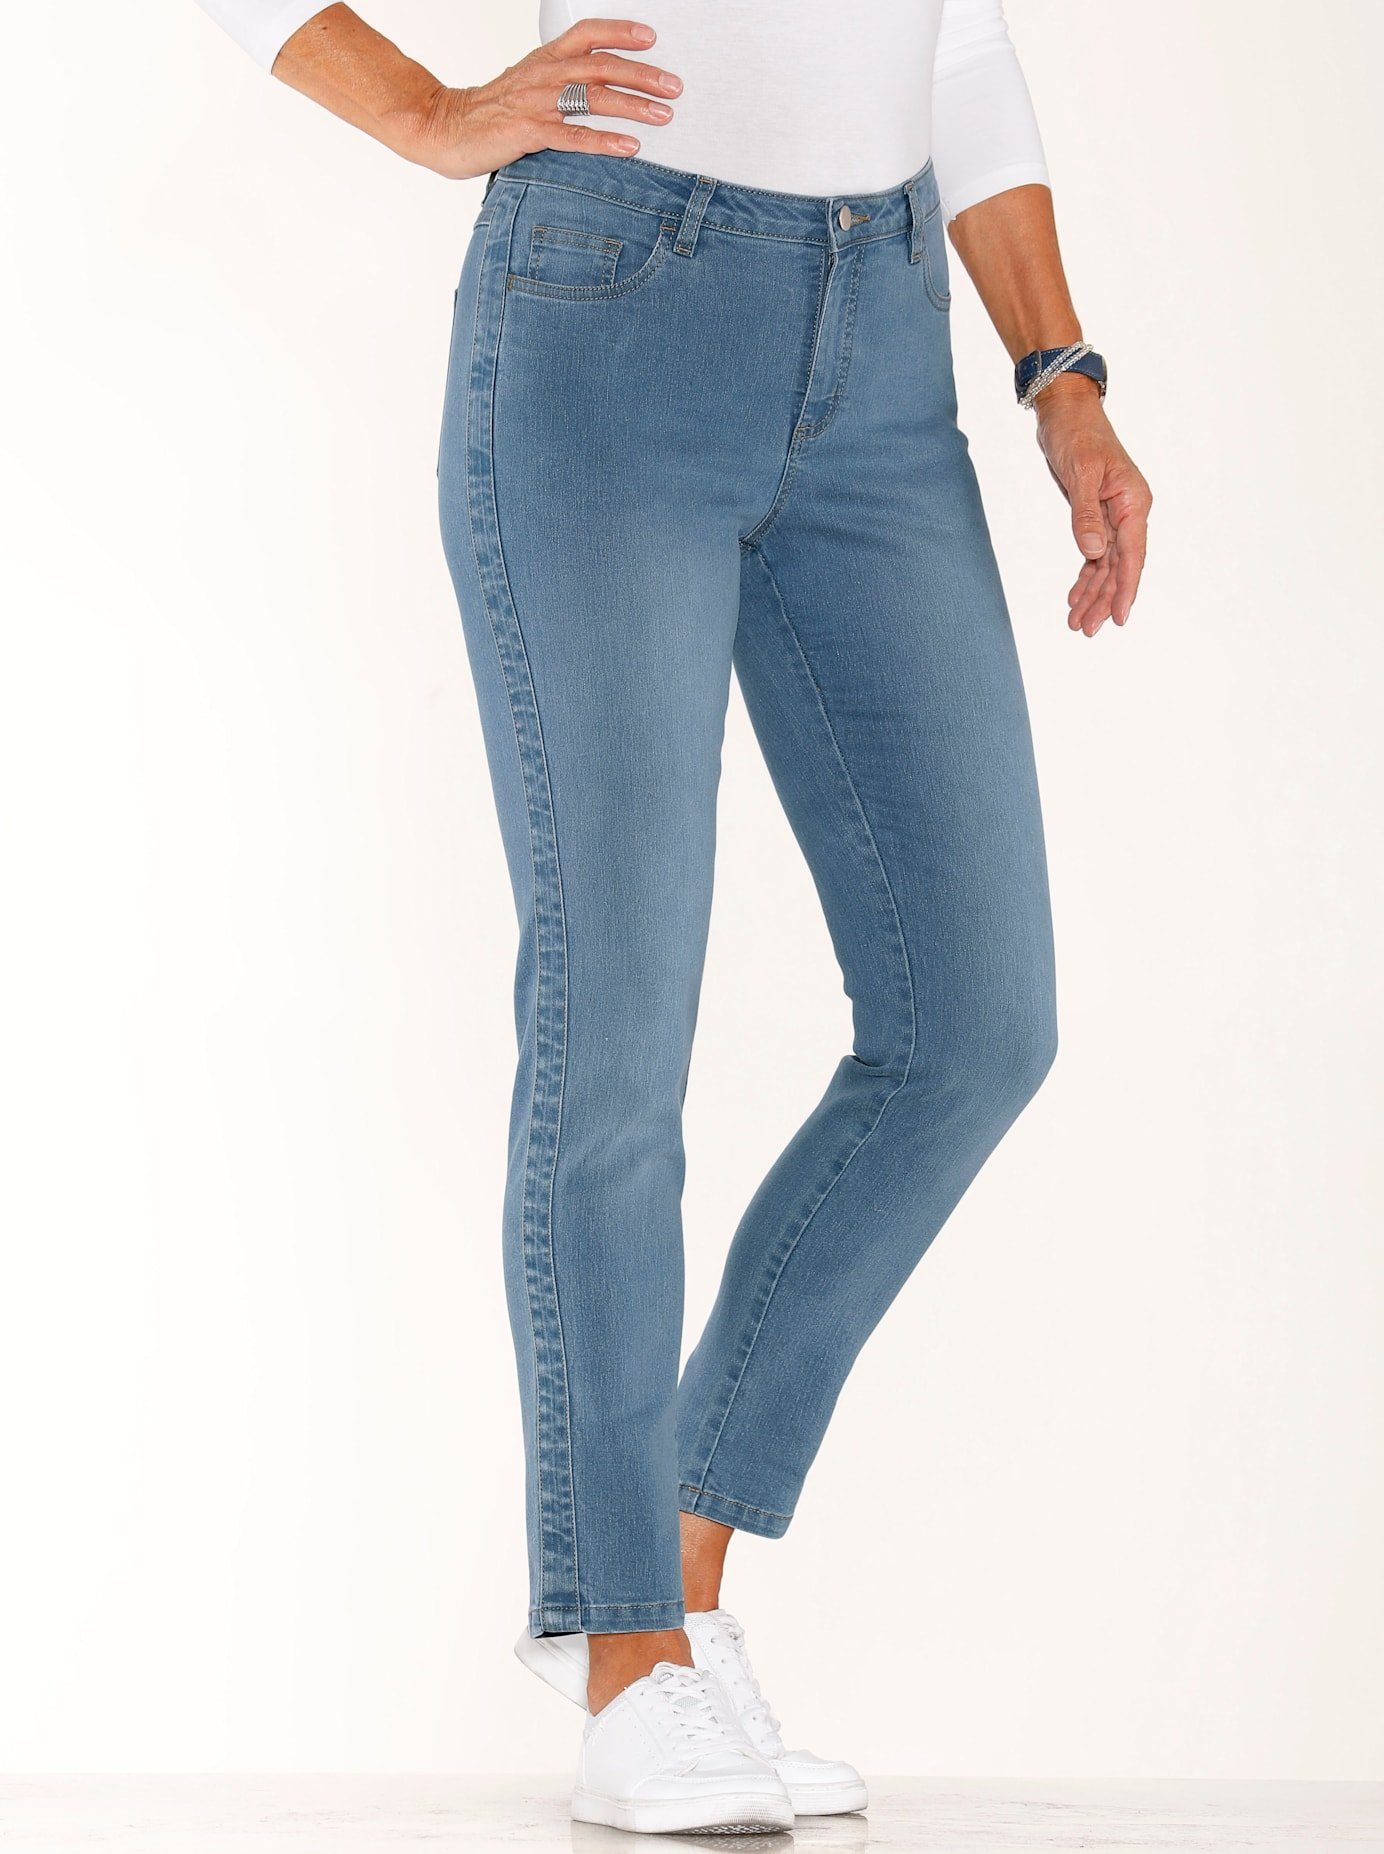 Classic Basics 7 8 jeans